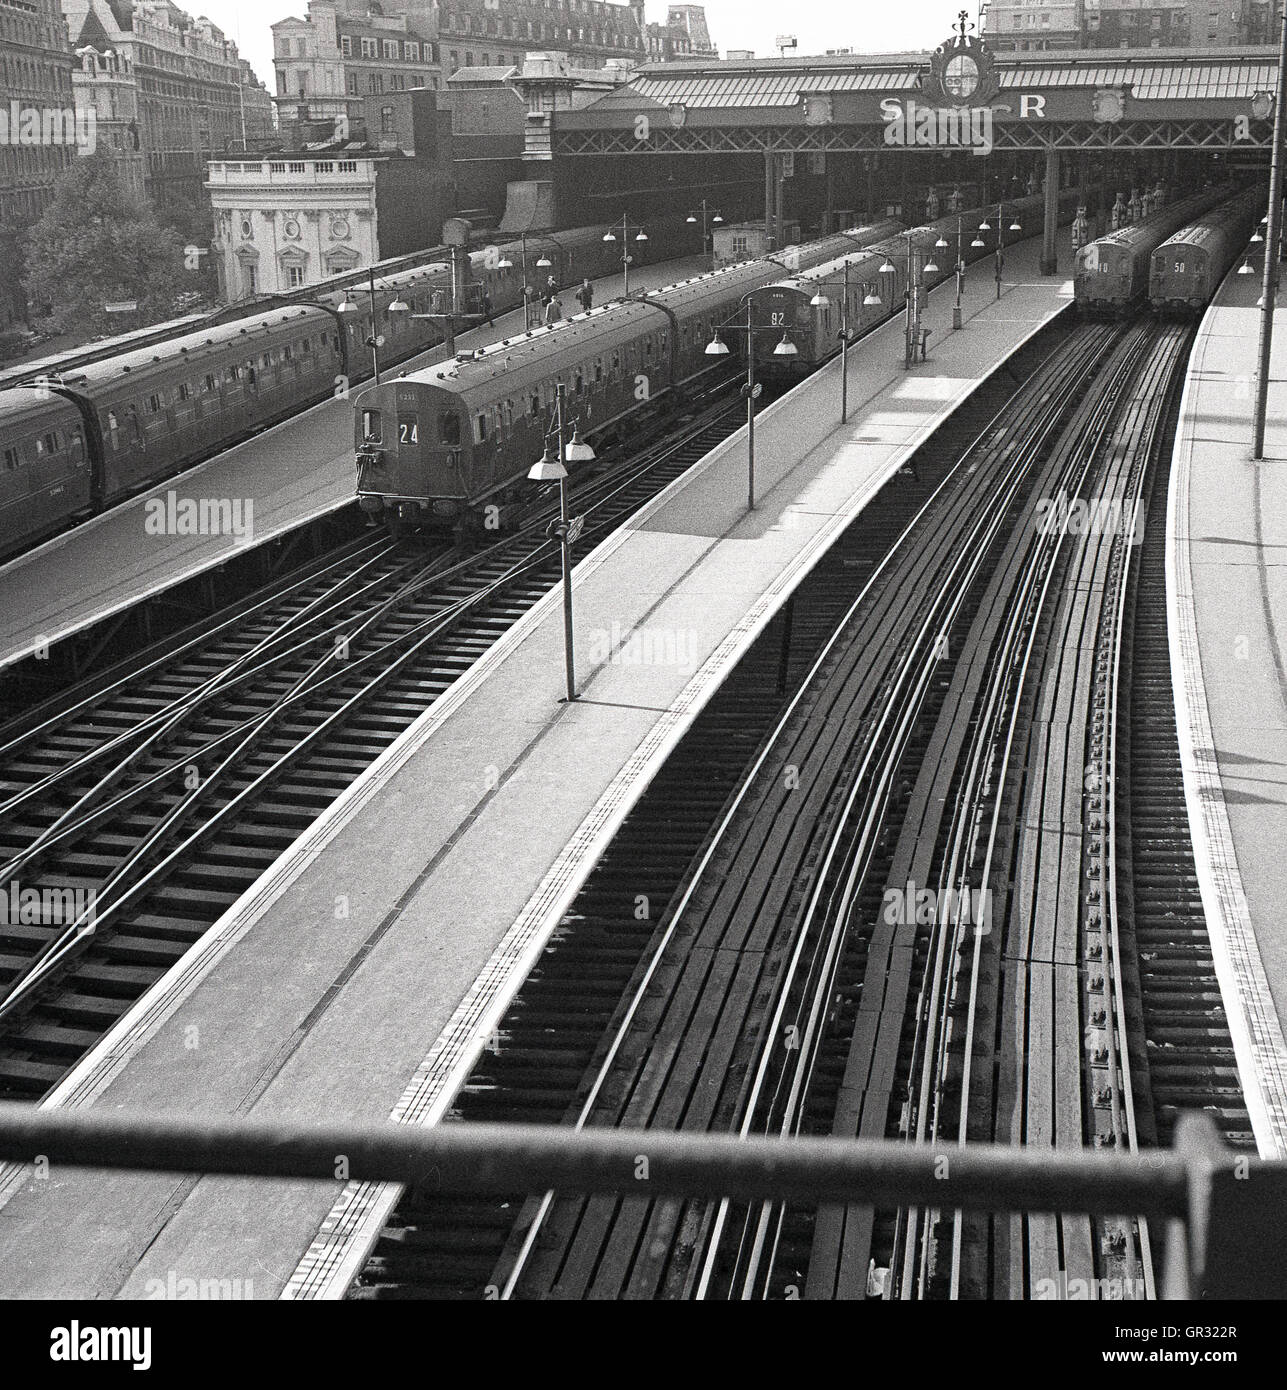 1950, historische, diesel S-Bahnen von der Bahnhof Waterloo, London, England abreisen, Hauptsitz in südlichen Eisenbahn (SR), die 1948 im Rahmen der Verstaatlichung wurde, der südlichen Region von British Railways. Stockfoto